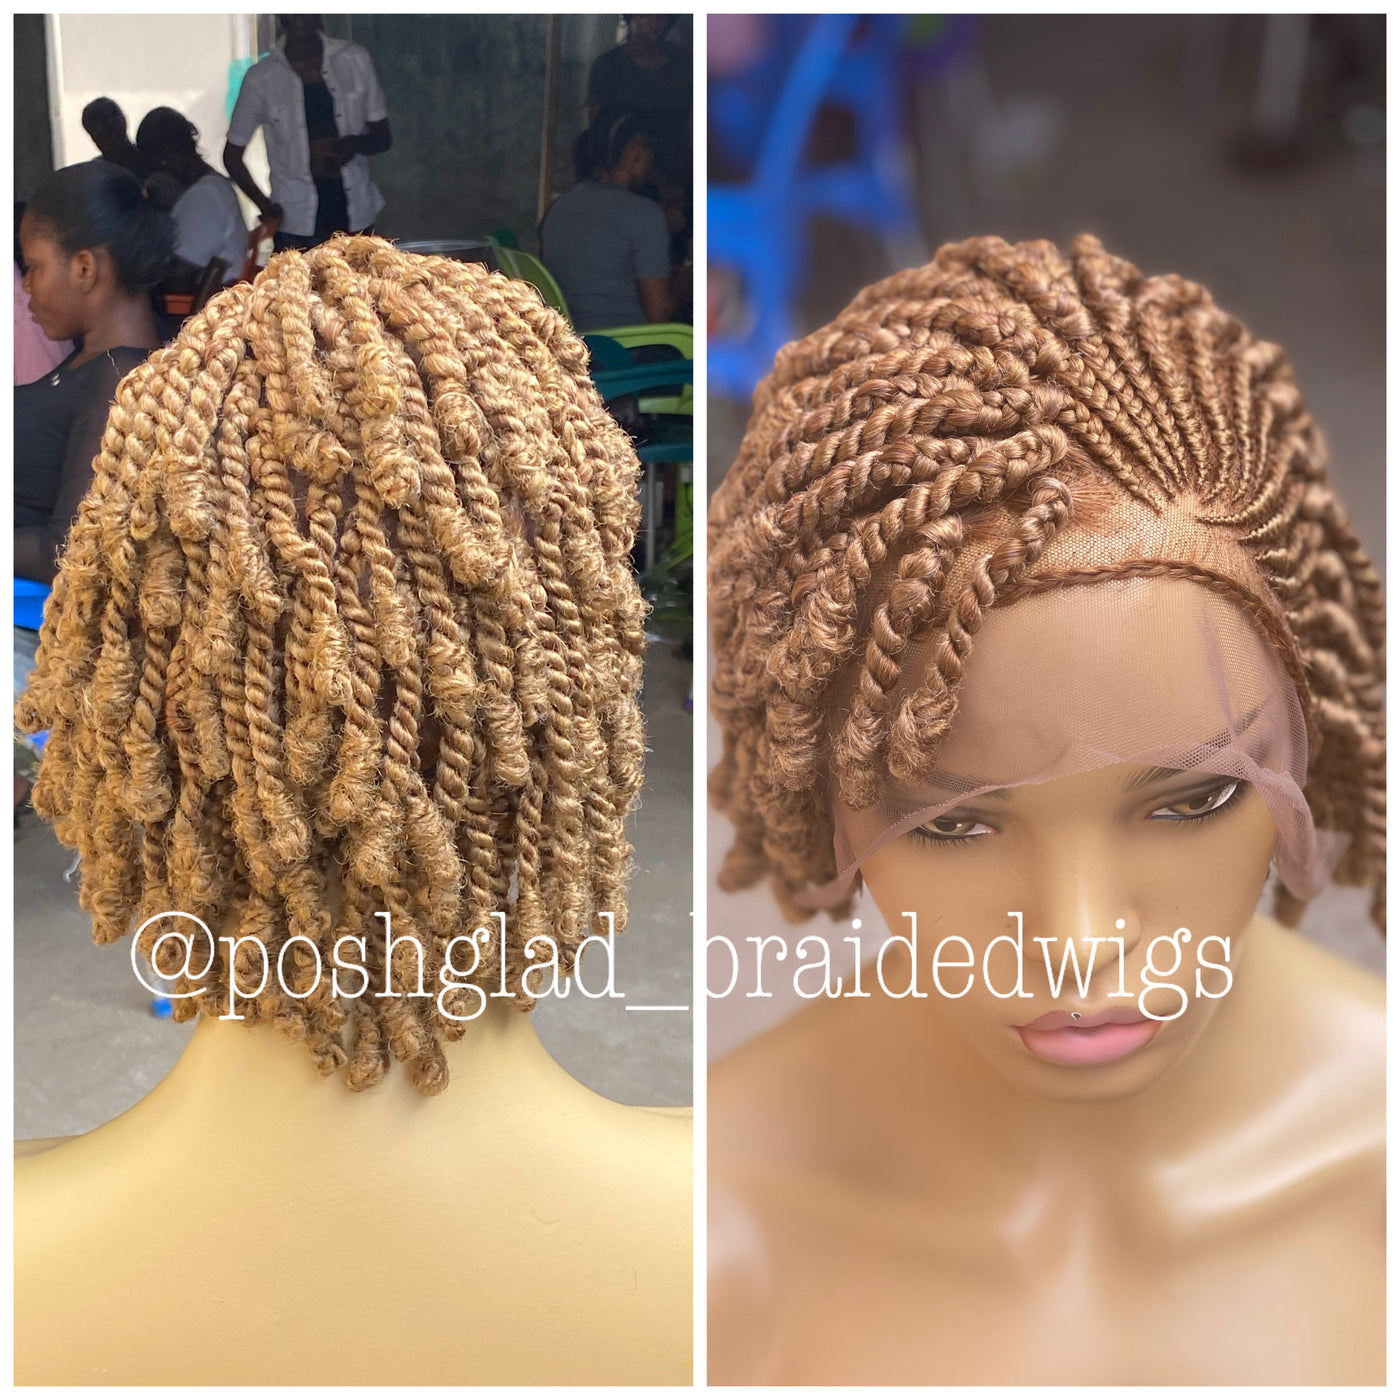 Twist Braid Wig - Color 30 Light Auburn - Rachel Poshglad Braided Wigs Twist Braid Wig